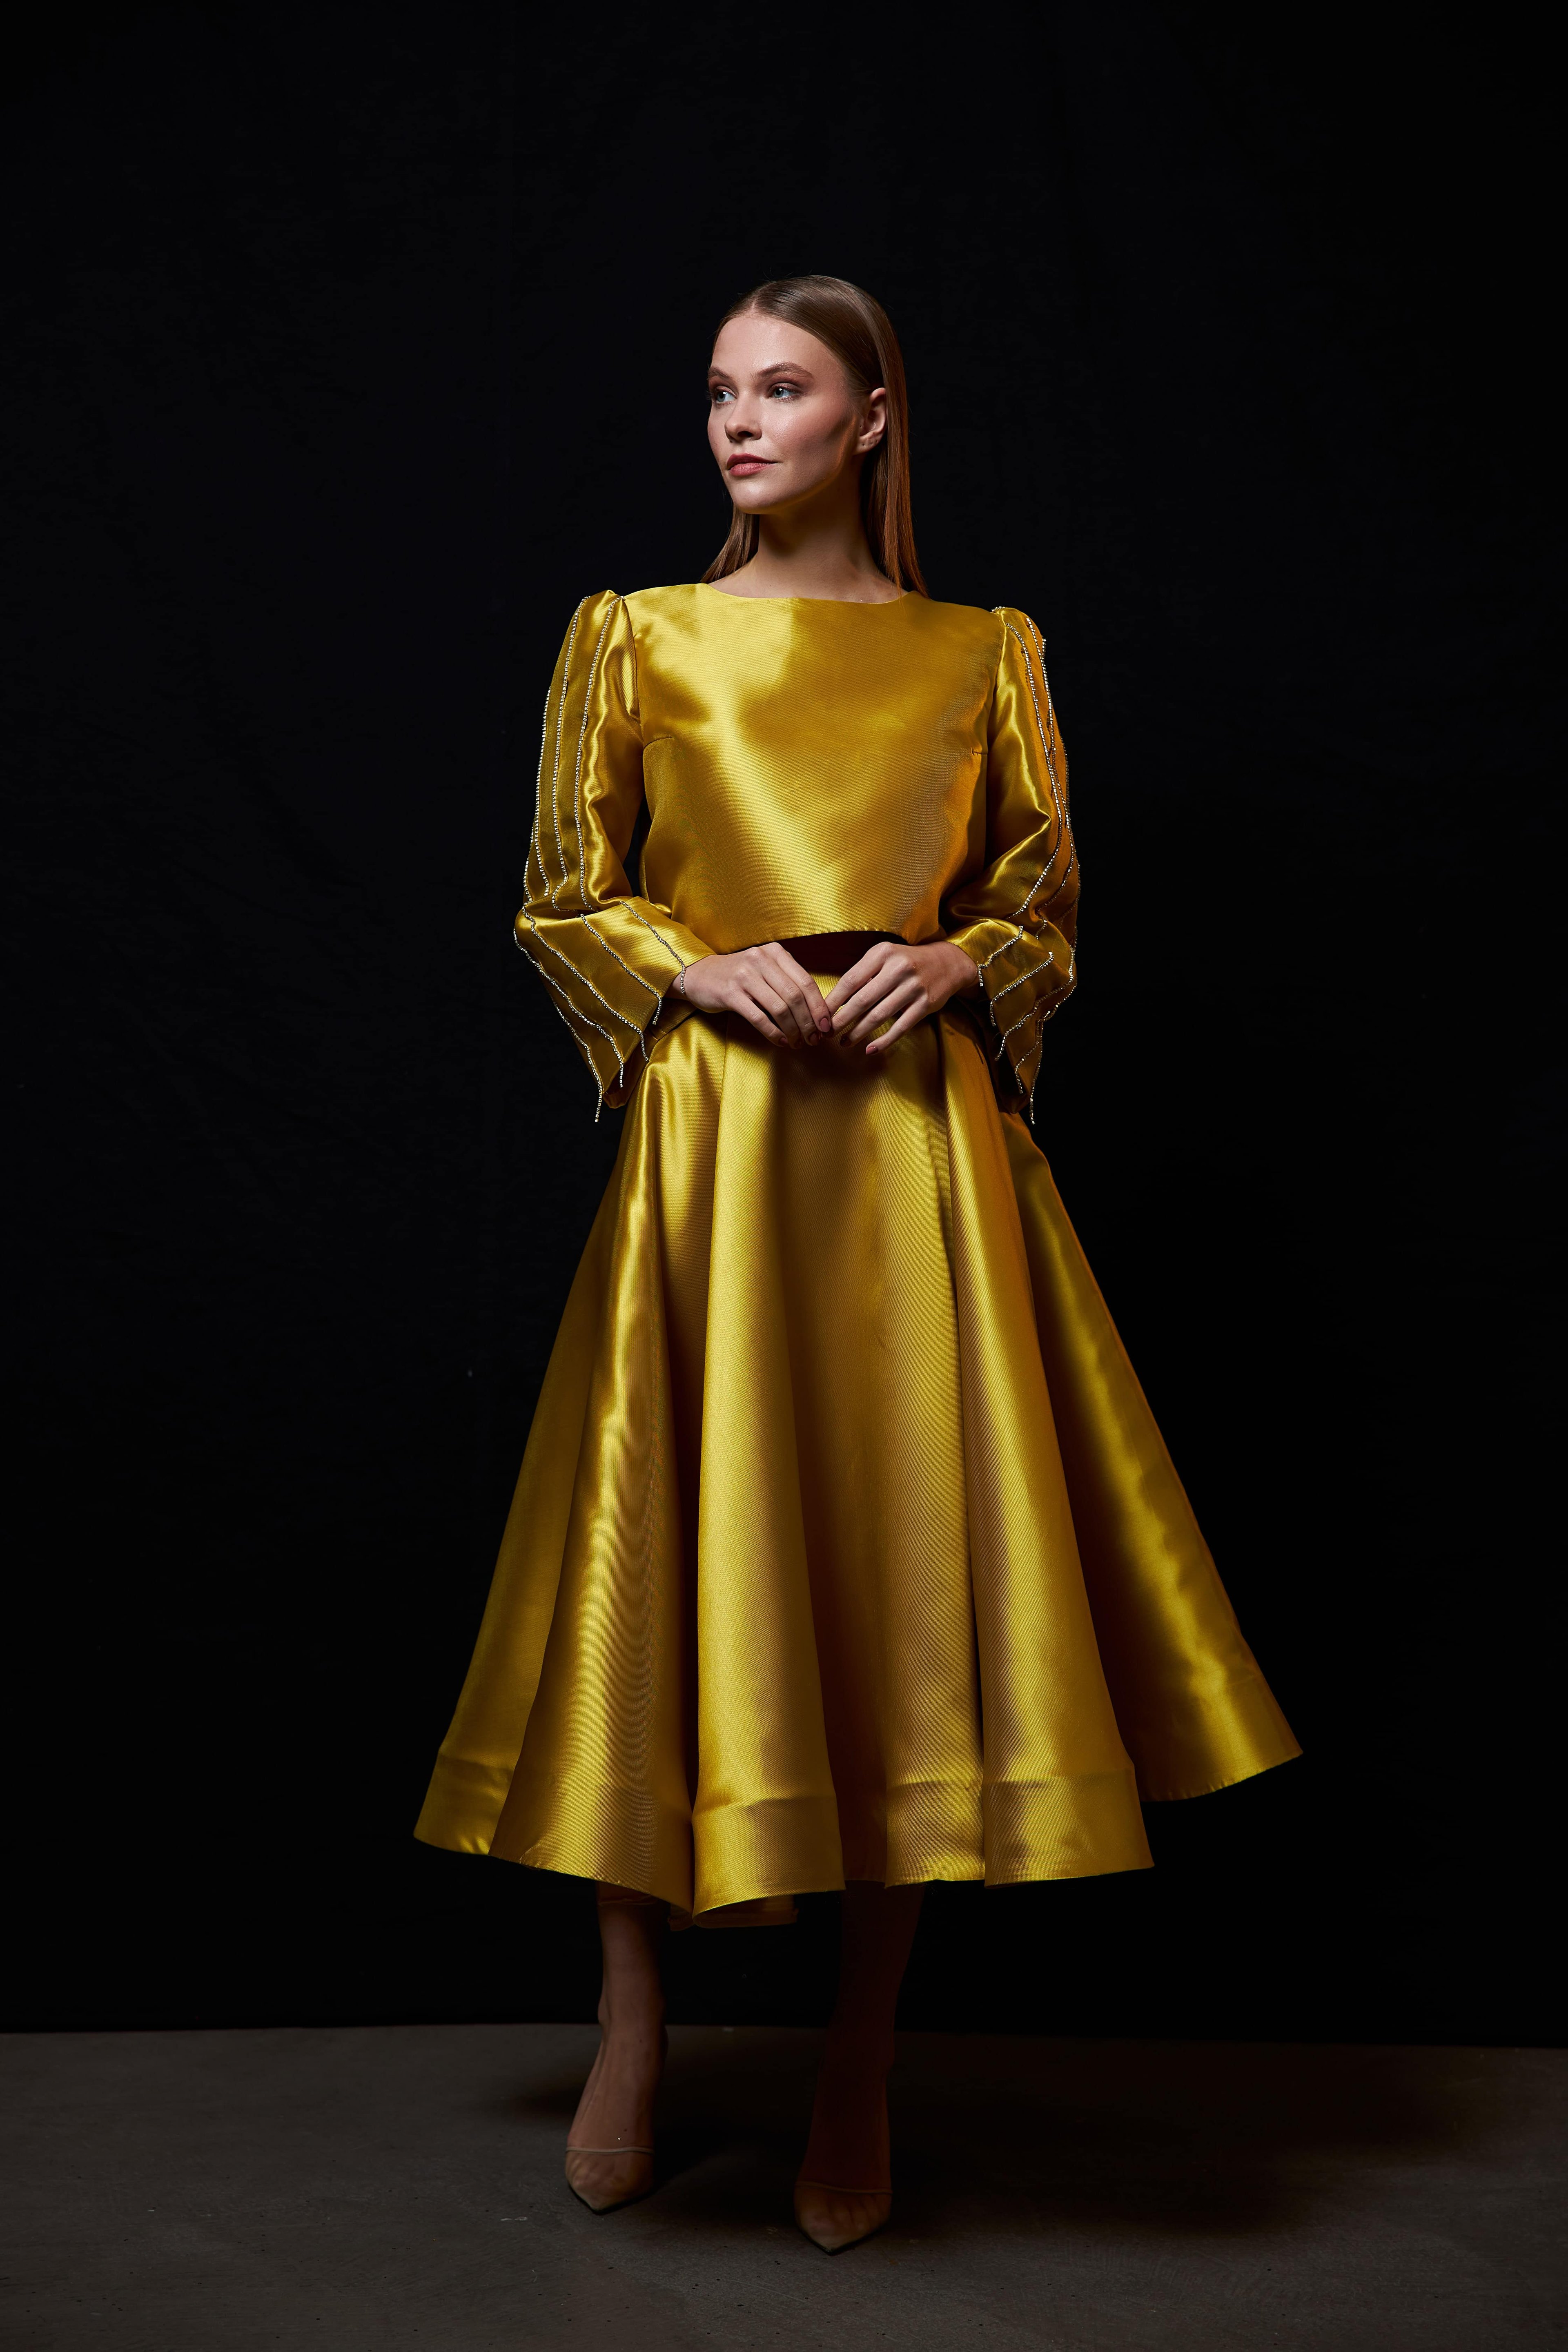 Veronika Takım Abiye - Mustard Color